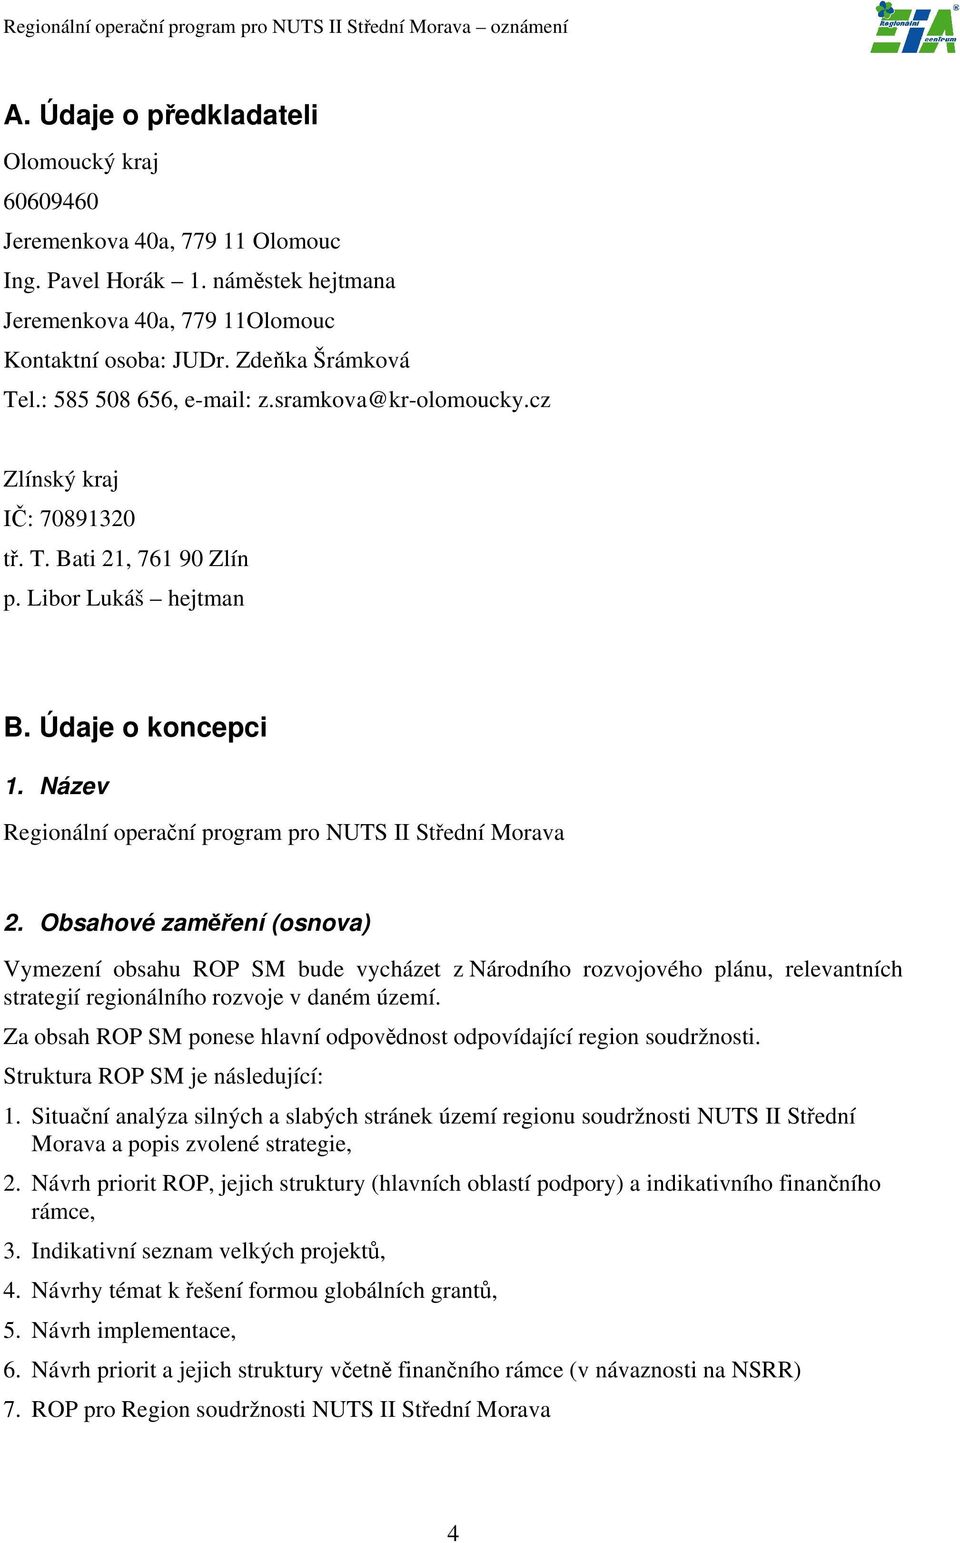 Název Regionální operační program pro NUTS II Střední Morava 2.